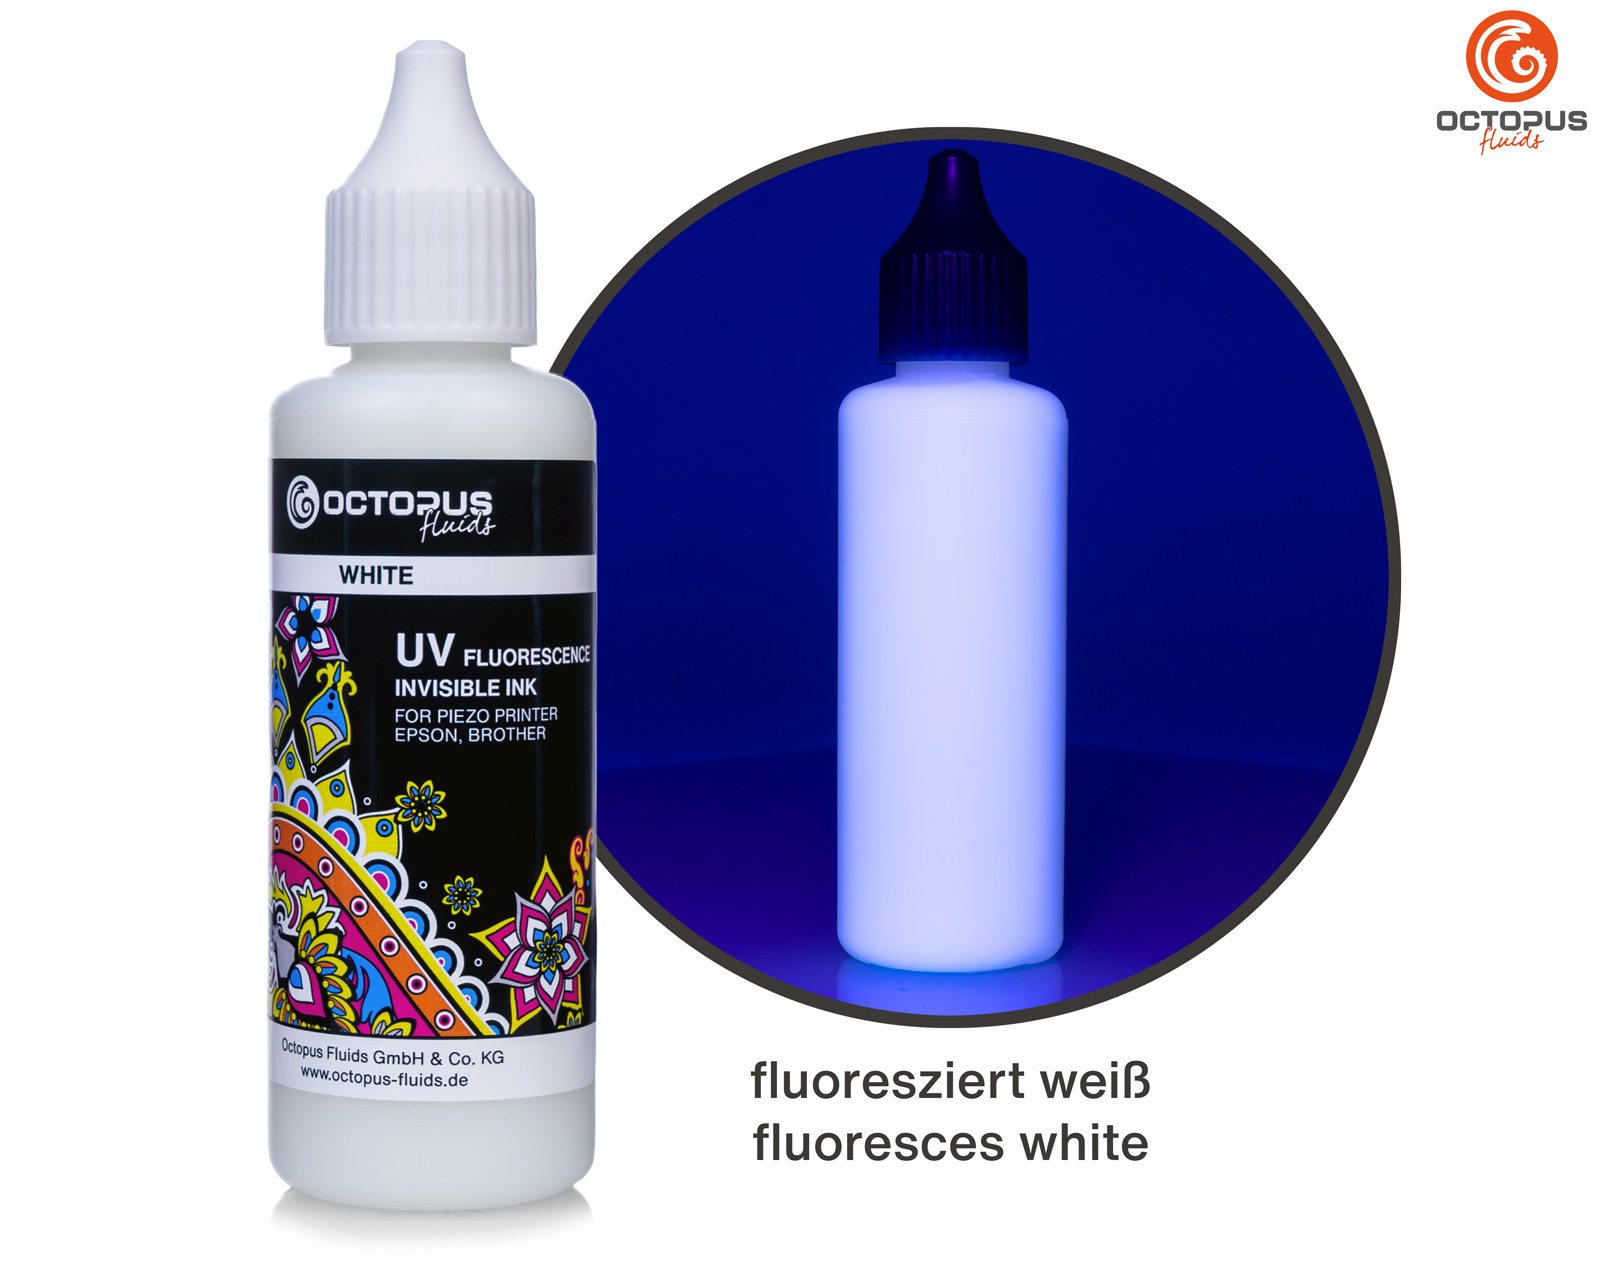 UV fluoreszierende, unsichtbare Tinte für Epson und Brother, weiss